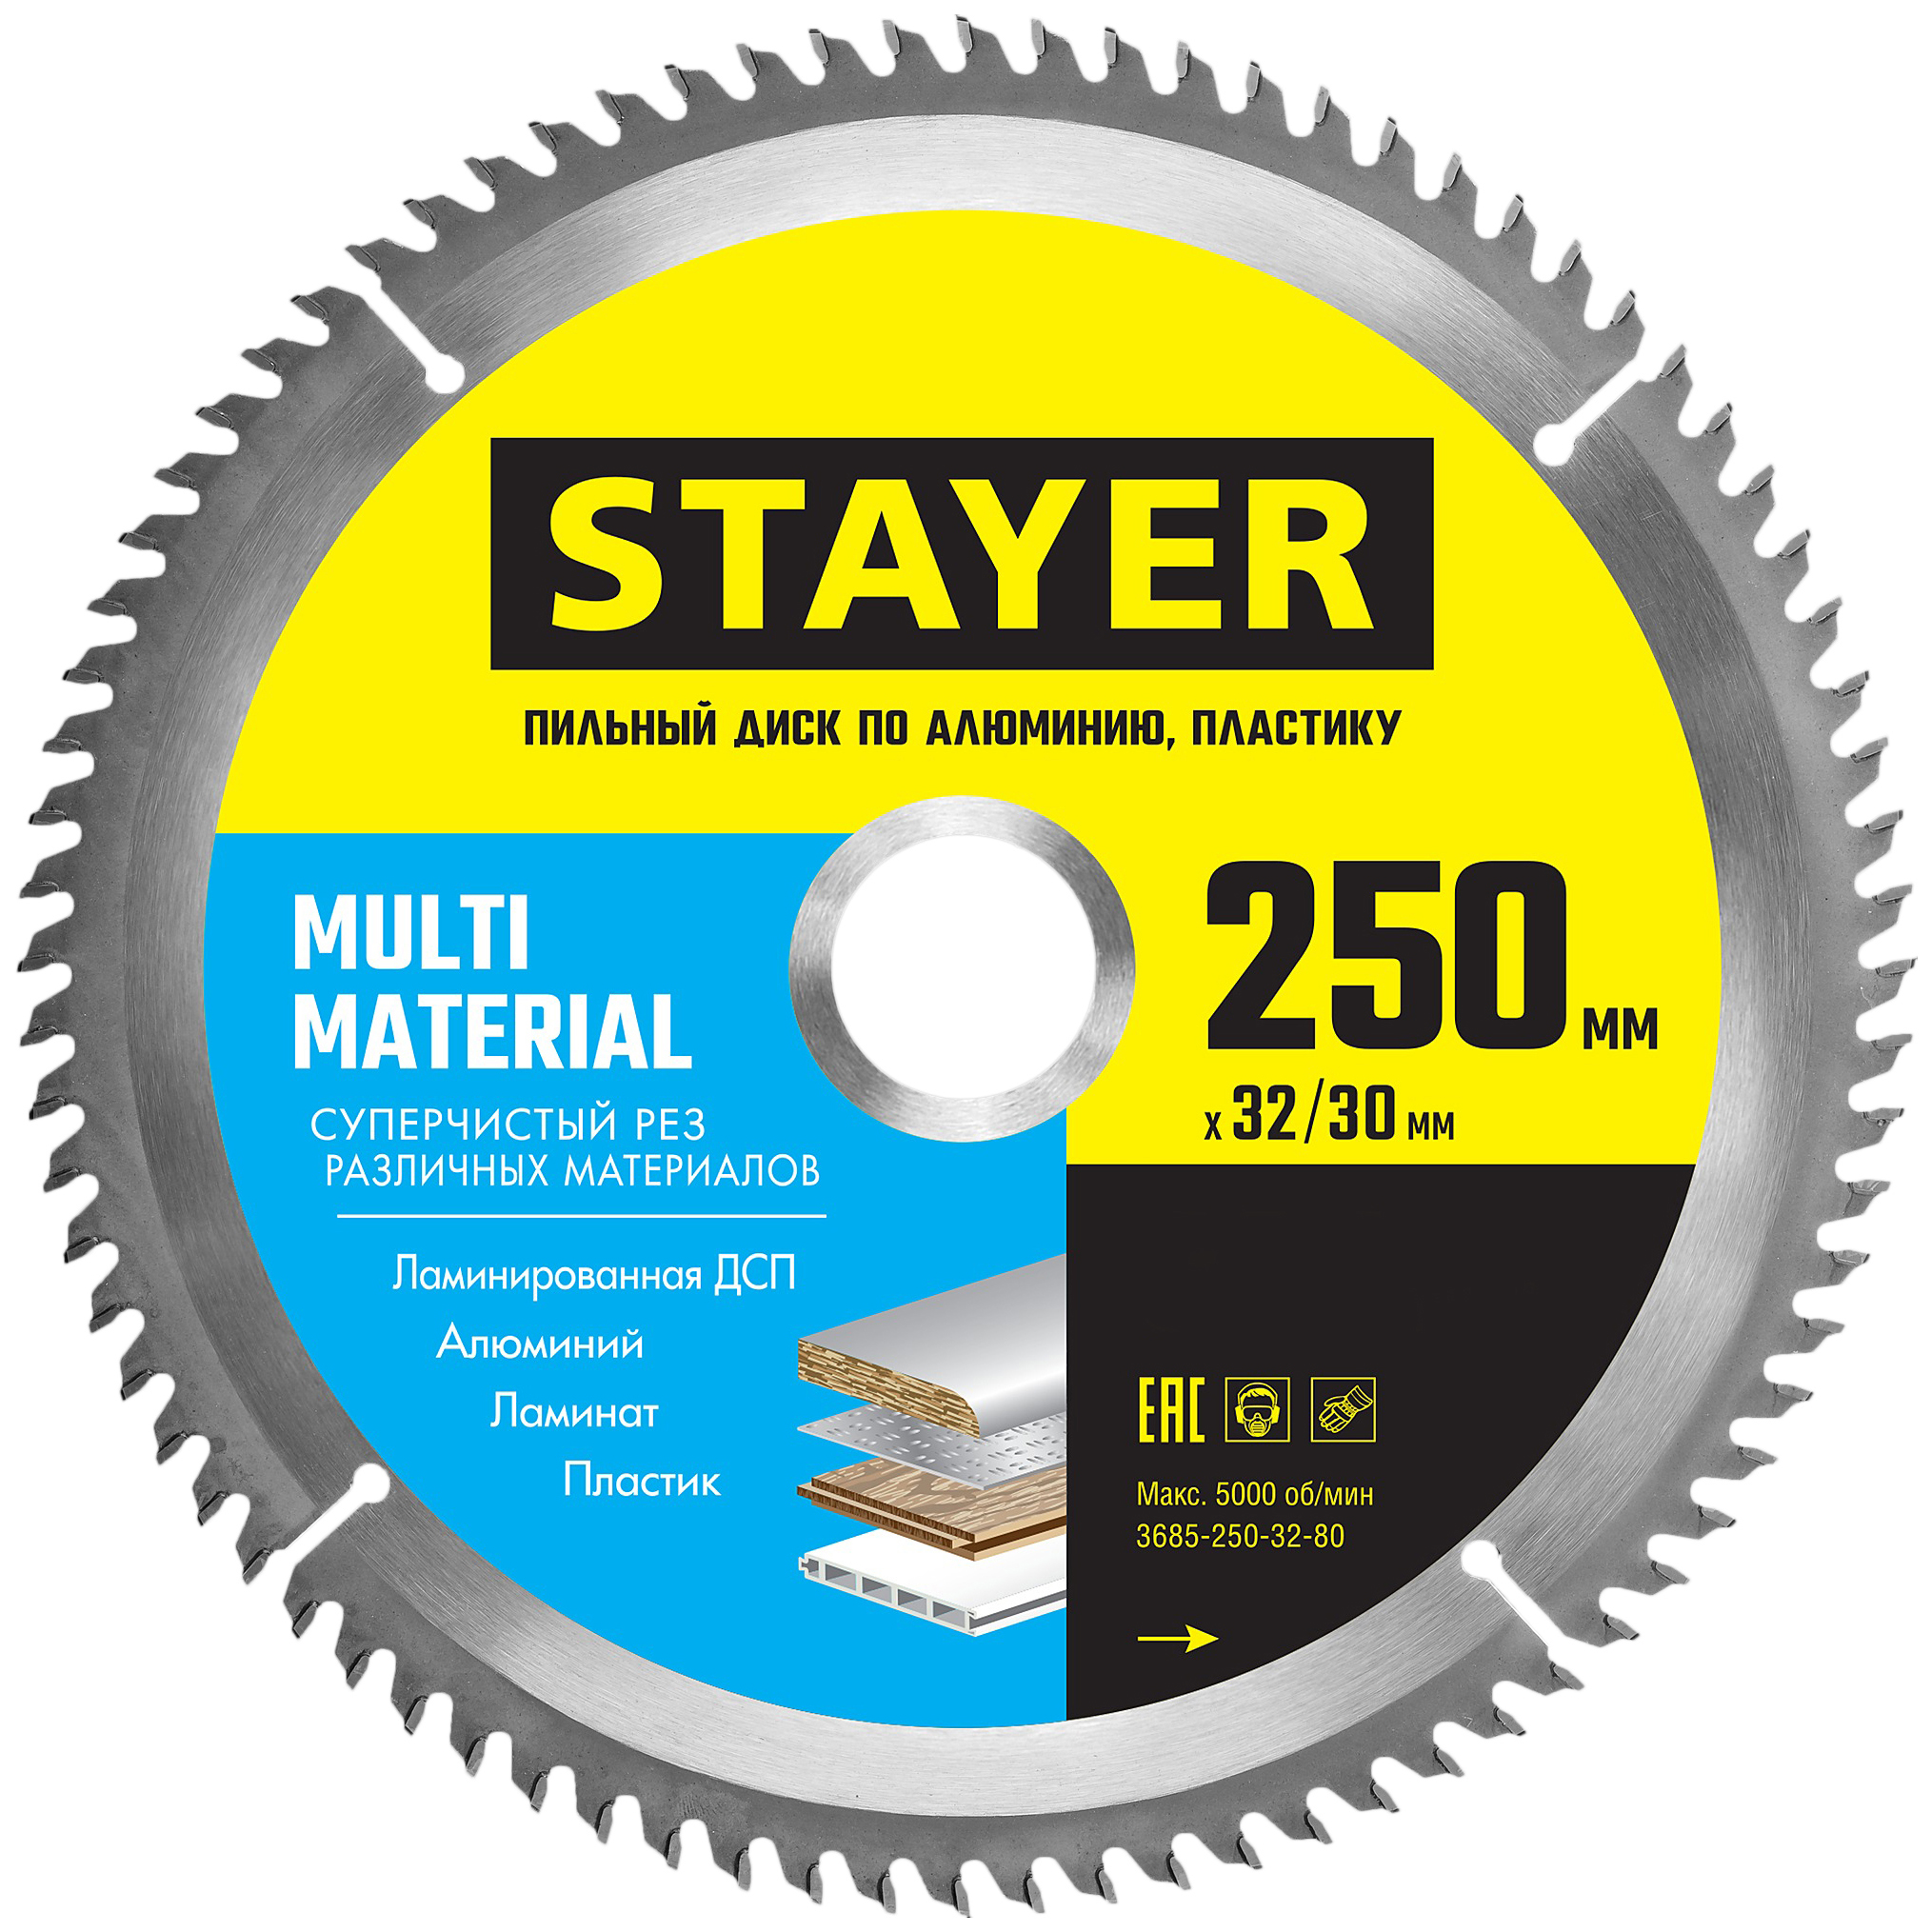 Диск Stayer MULTI MATERIAL 250х32/30мм 100Т, диск пильный по алюминию, супер чистый рез